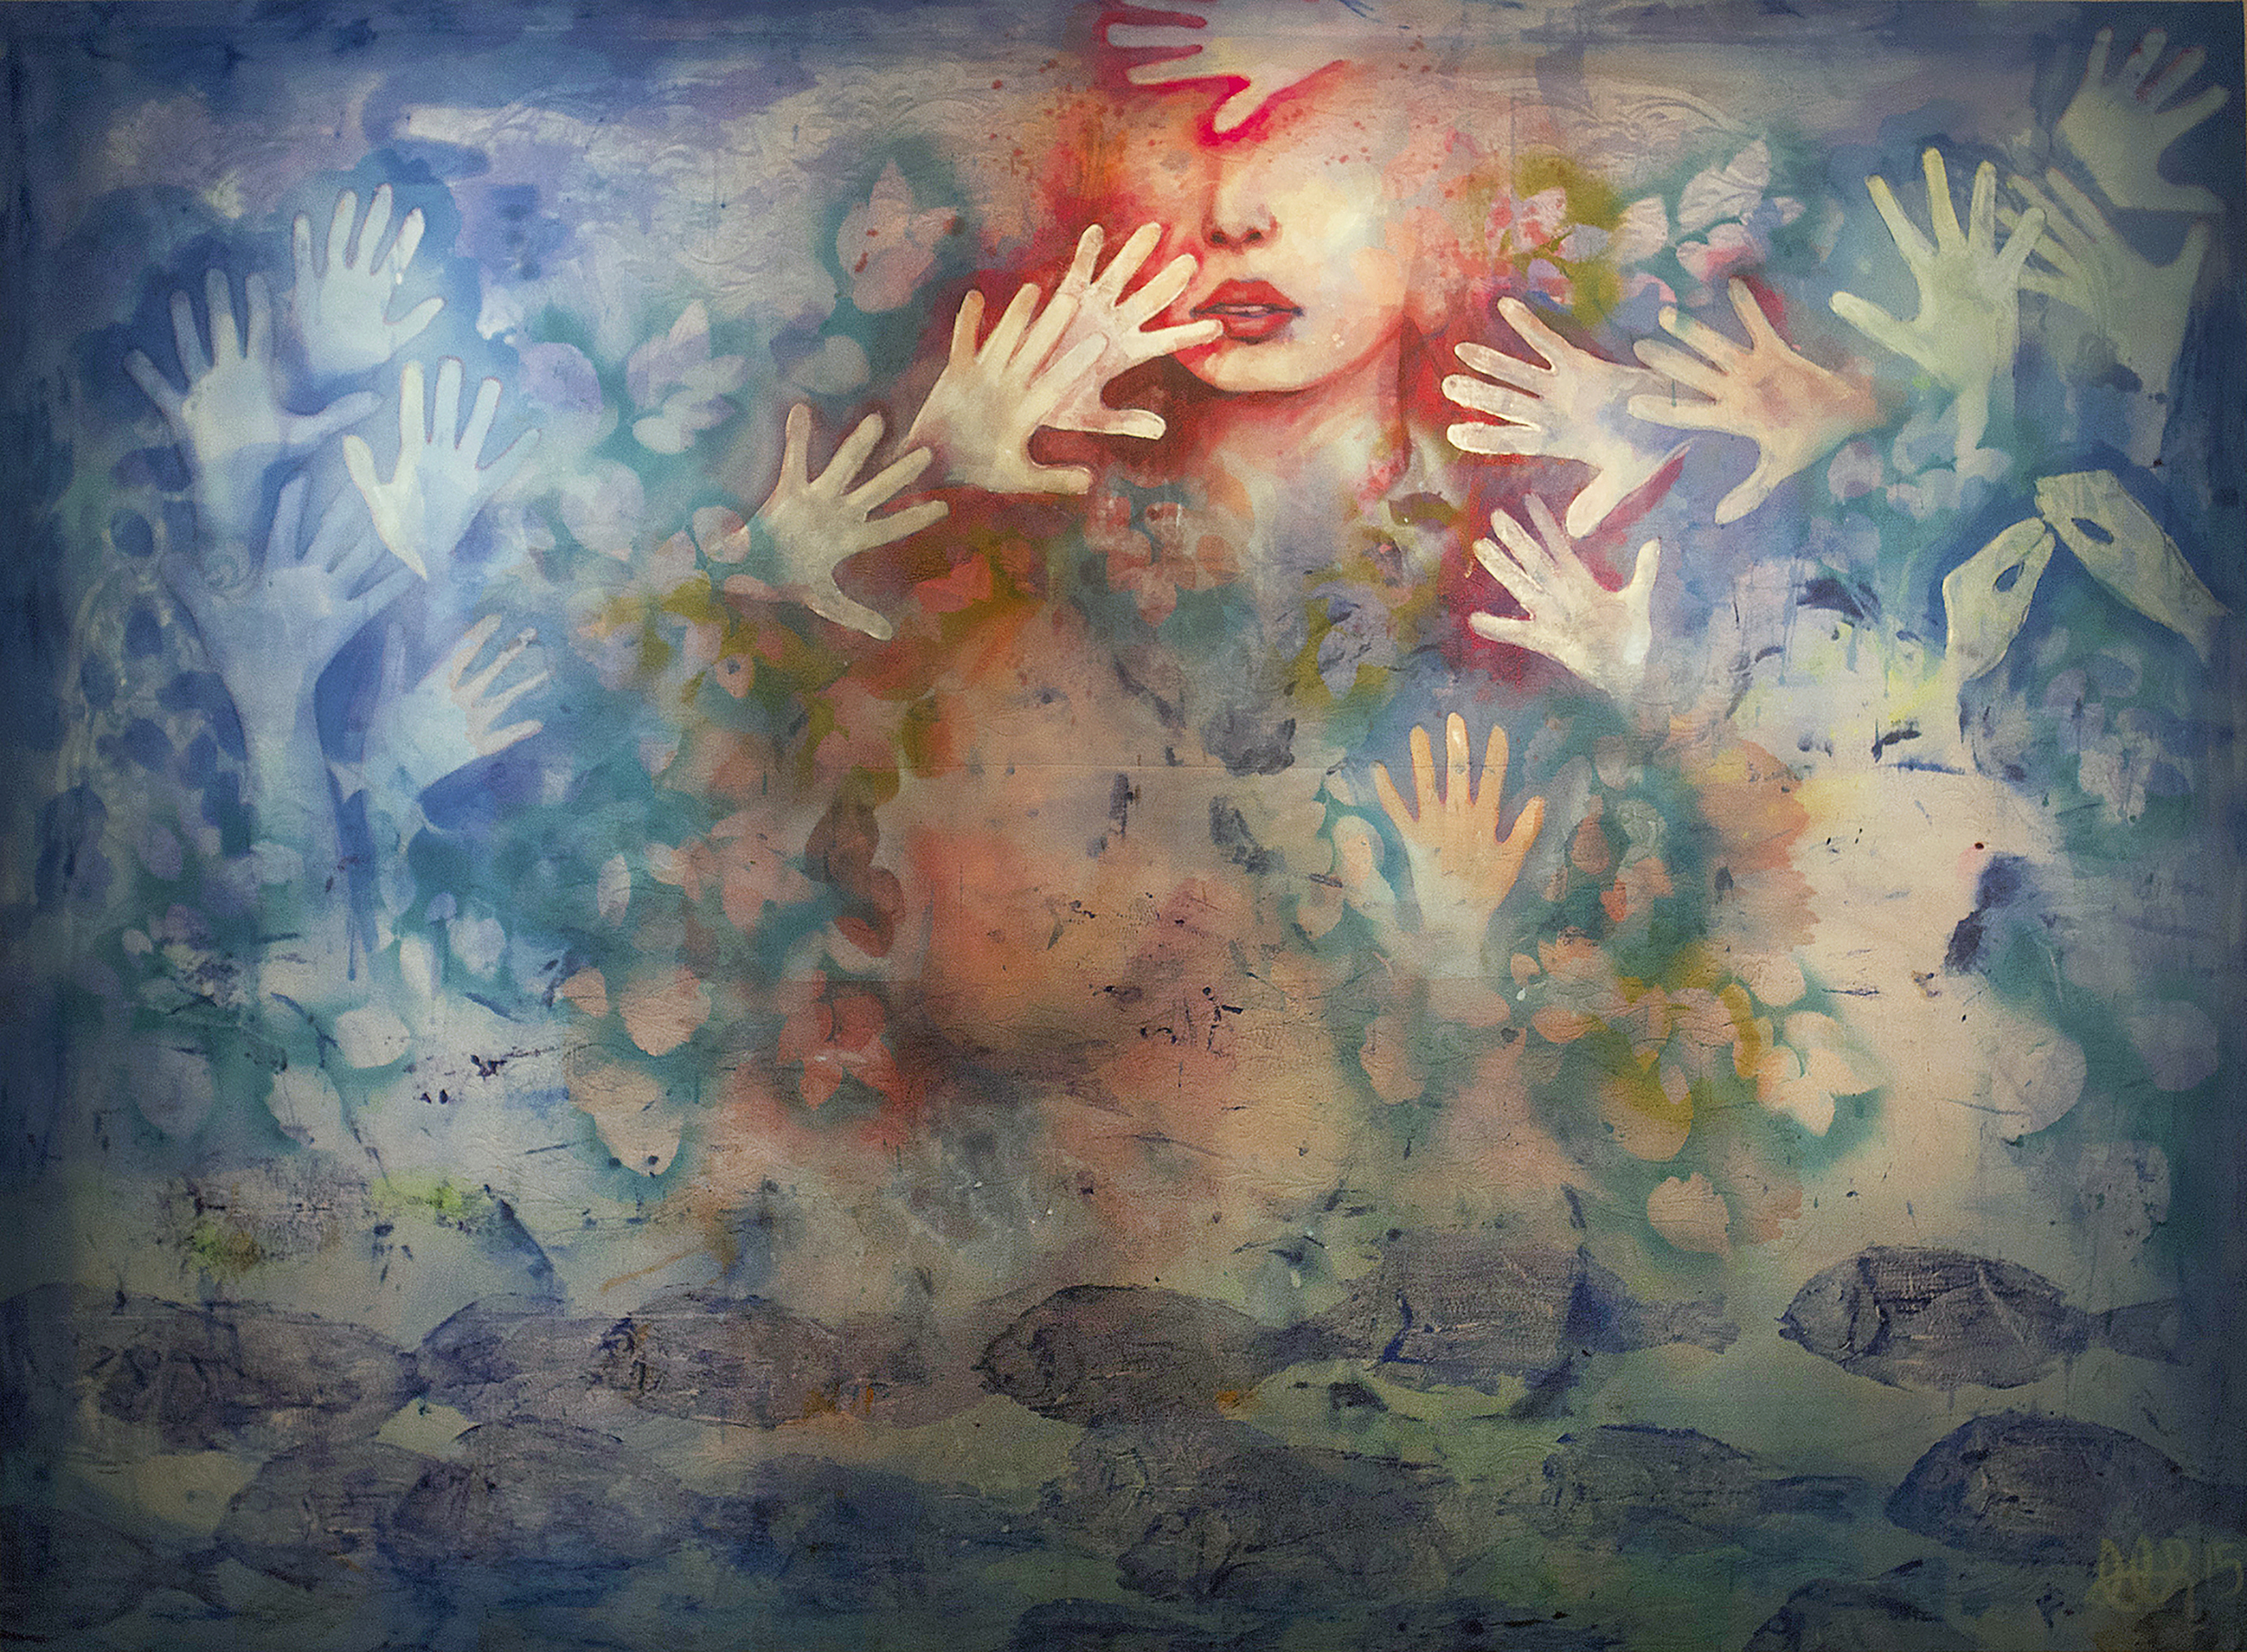 'Fish Fingers' (2015) Image courtesy of John Atkinson.